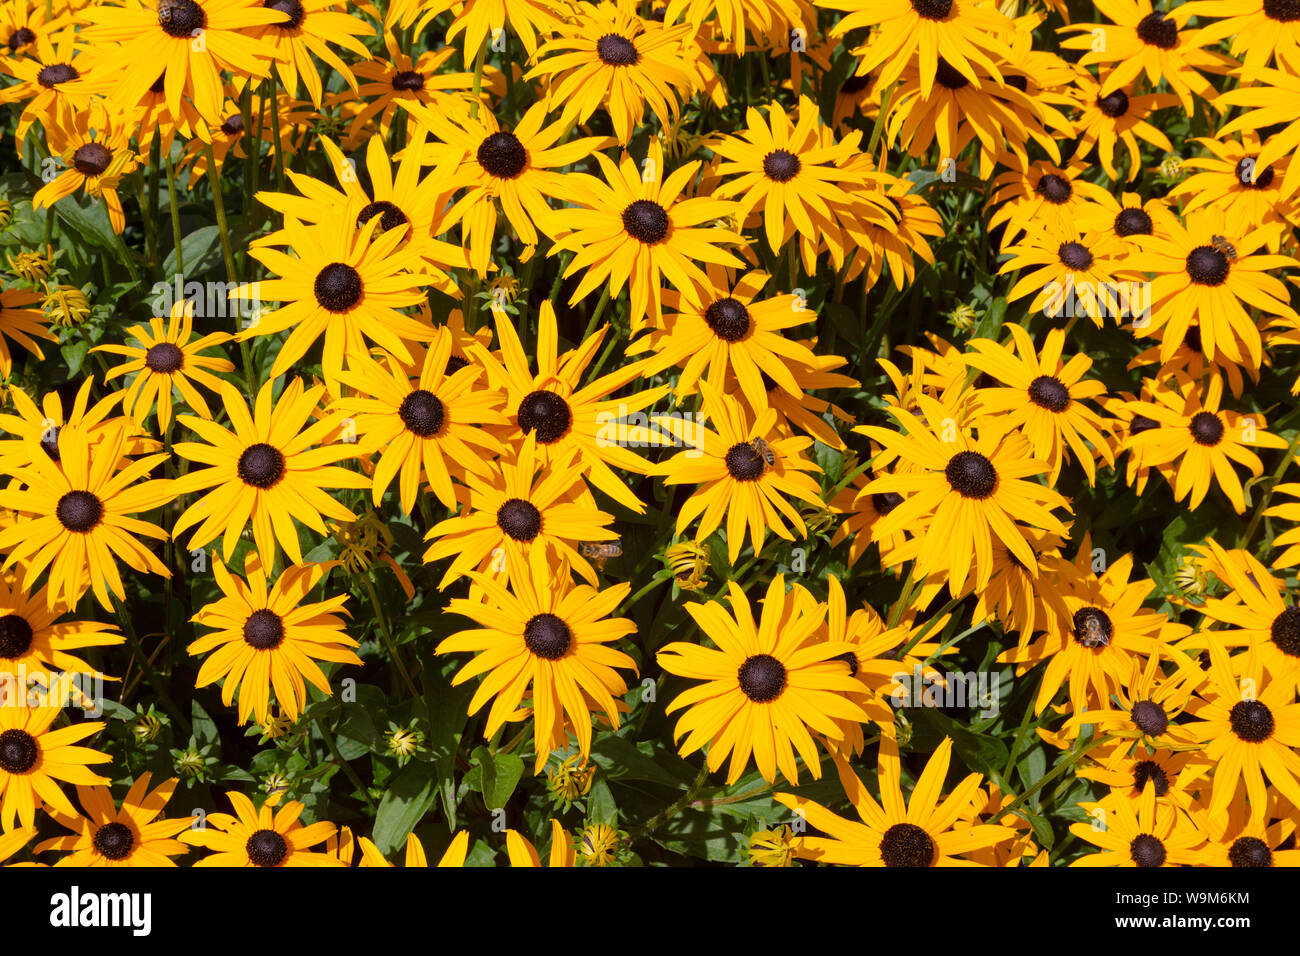 Rudbeckia hirta, ou Black Eyed Susan fleurs, jaunes comme des fleurs daisy avec un centre noir. Banque D'Images